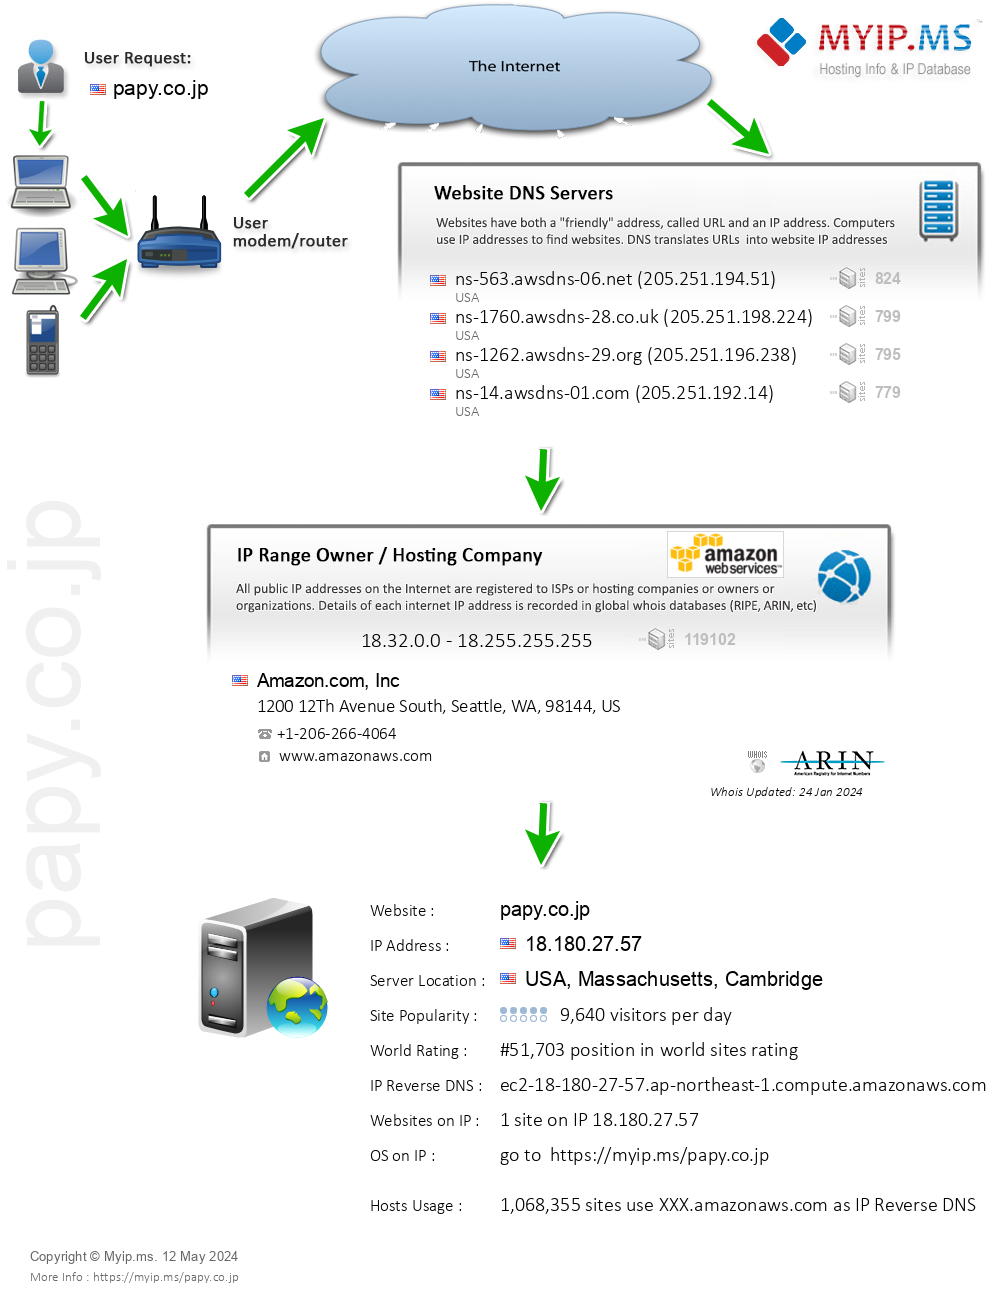 Papy.co.jp - Website Hosting Visual IP Diagram